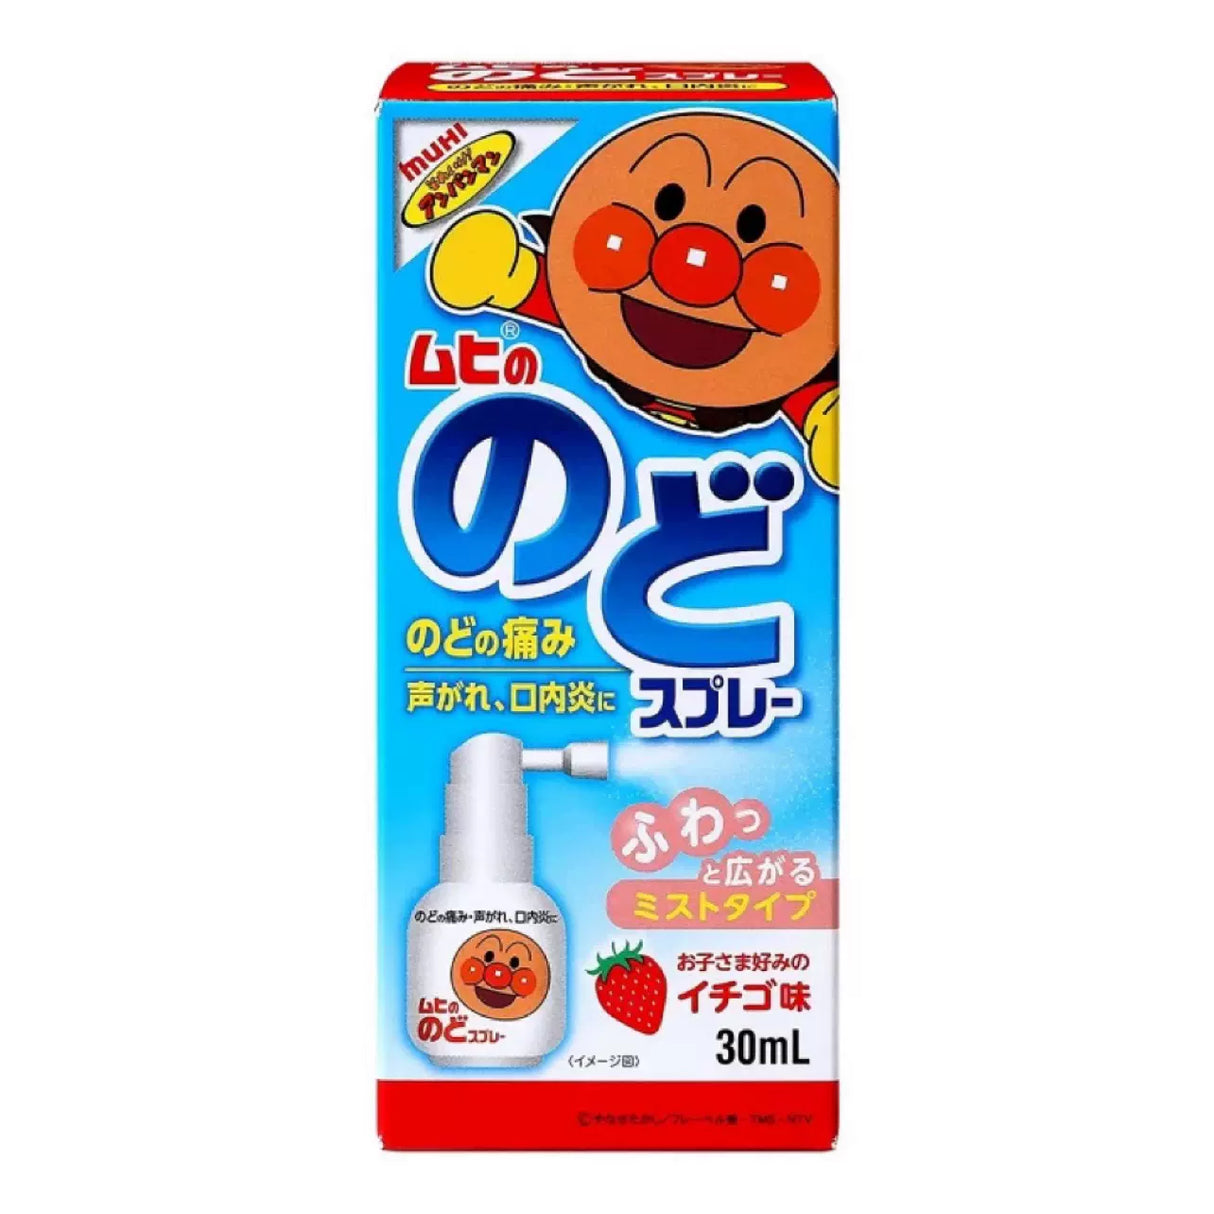 日本 面包超人 喉咙 喷雾 30ml 咽喉口腔喷雾剂 口内炎喉咙痛 草莓味